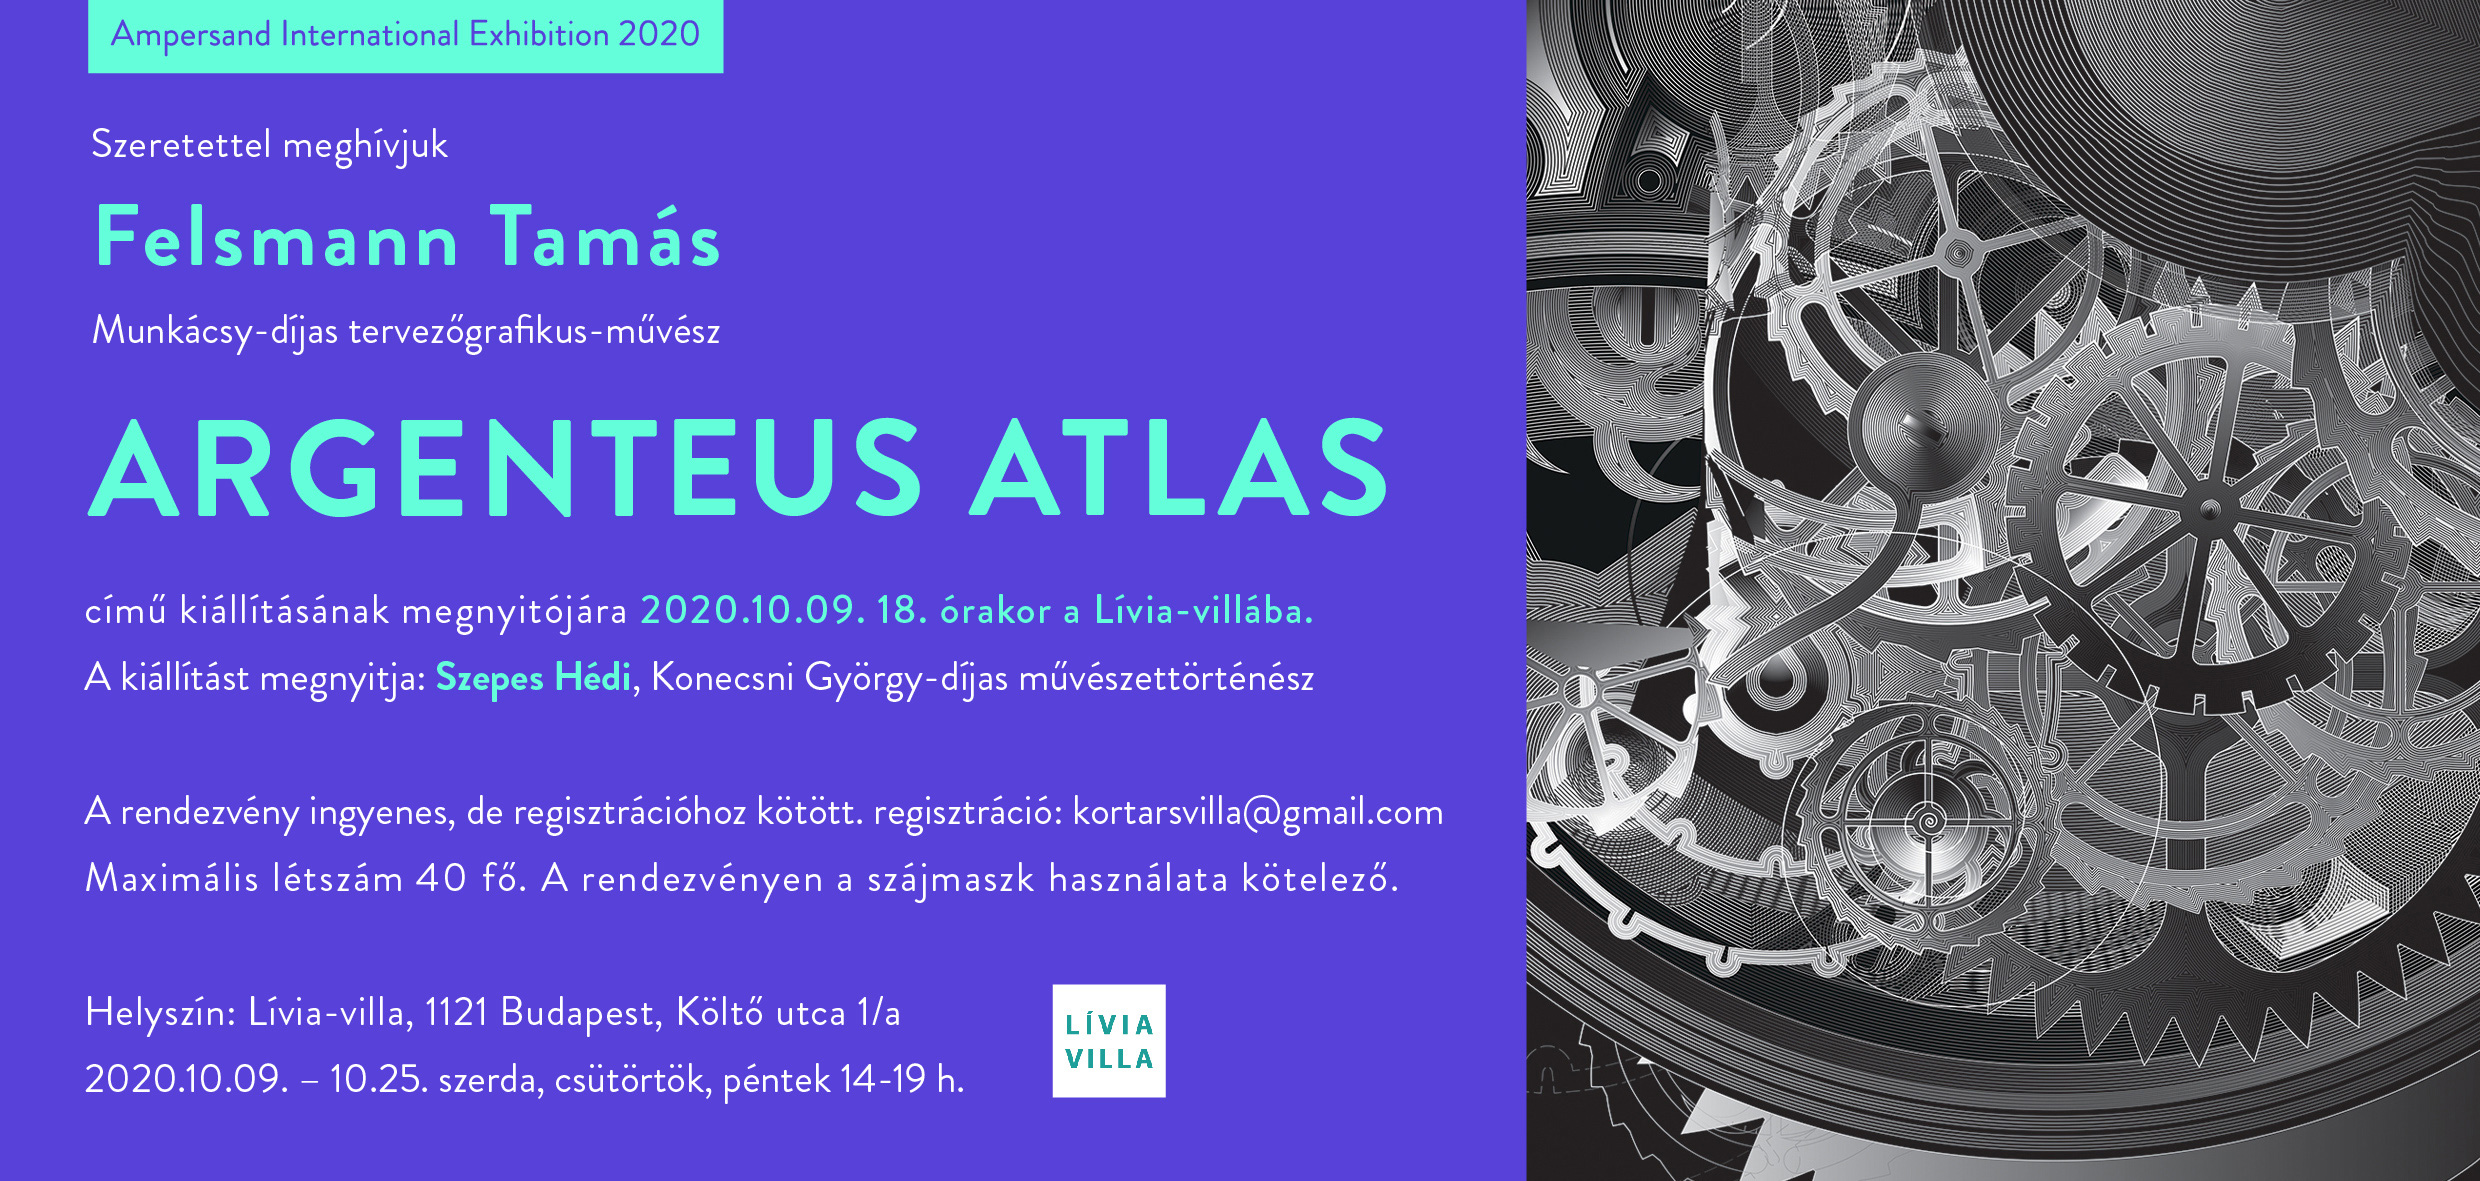 ARGENTEUS ATLAS – Felsmann Tamás